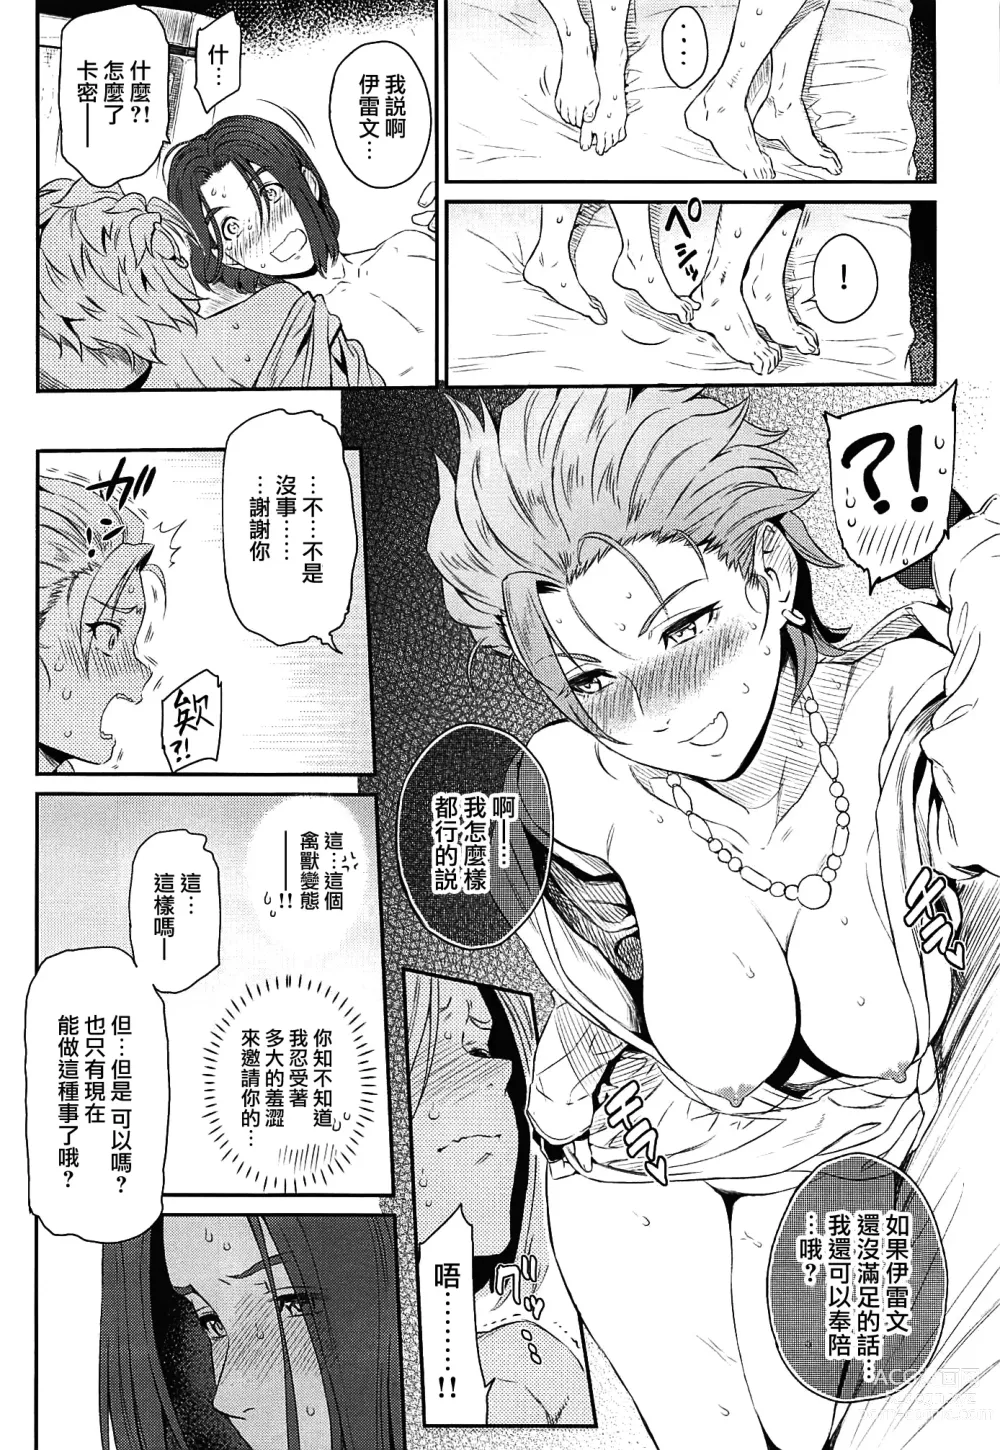 Page 35 of doujinshi Soutou no Washi